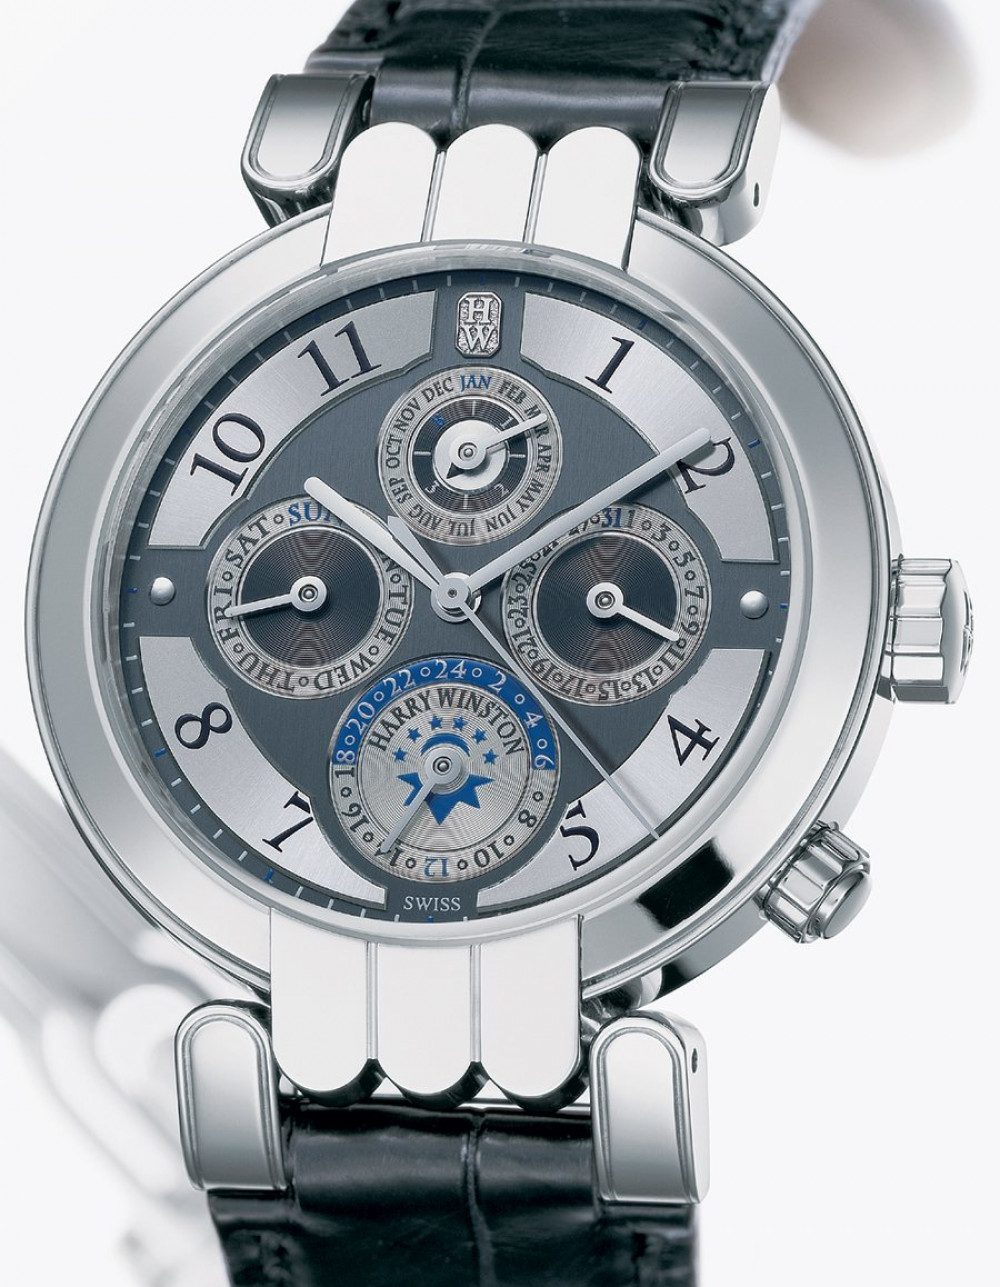 Zegarek firmy Harry Winston, model Ewiger Kalender Timezone